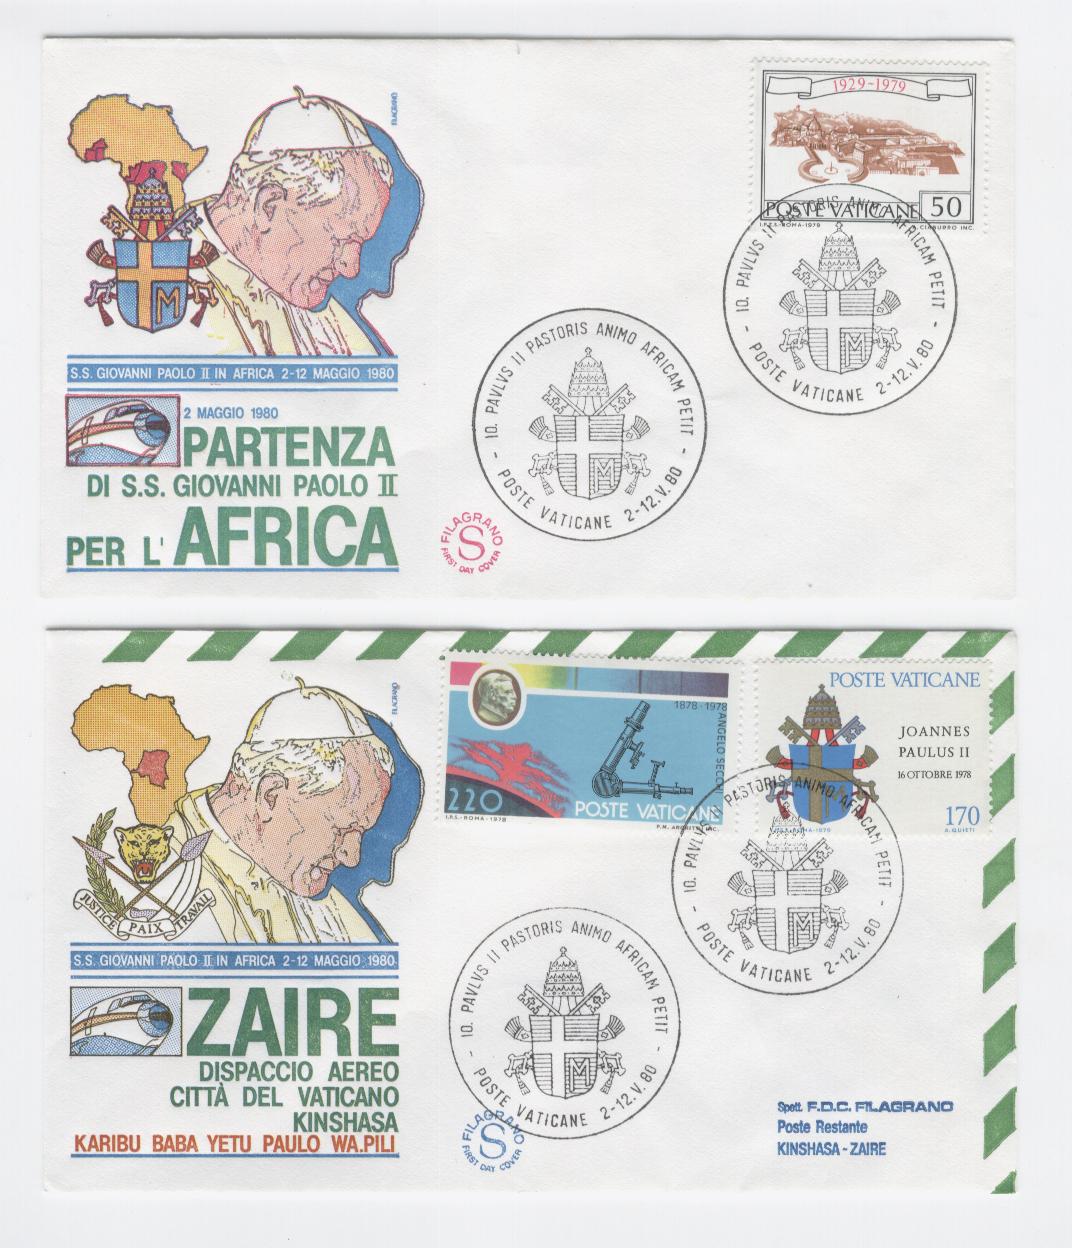 19418 - Viaggio di Giovanni Paolo II in Africa: Partenza e Zaire